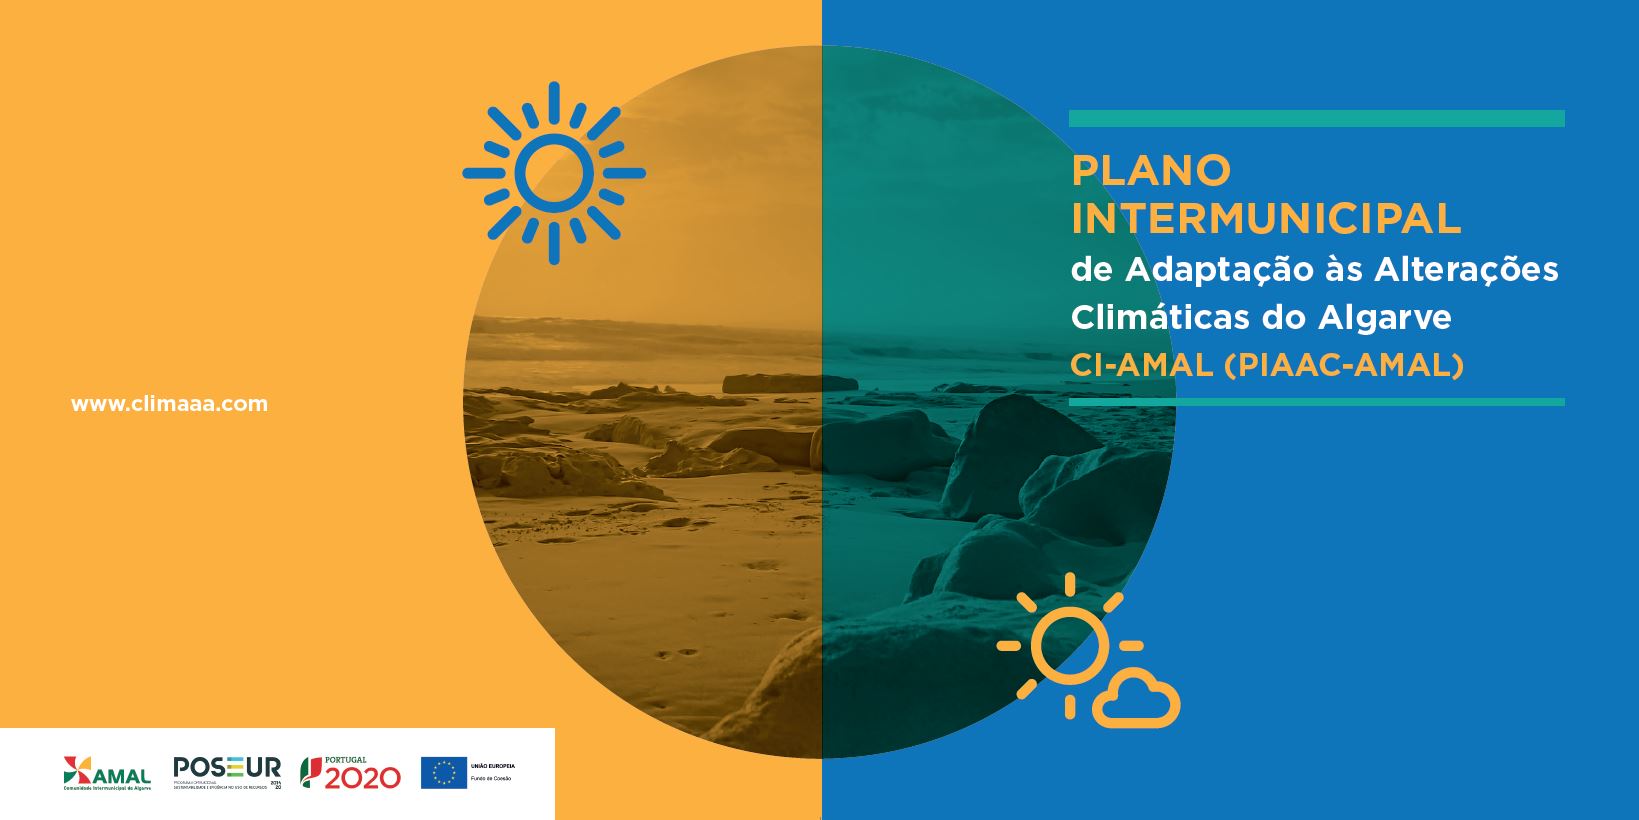 CCDR Algarve acolhe exposição "Plano Intermunicipal de Adaptação às Alterações Climáticas do Algarve